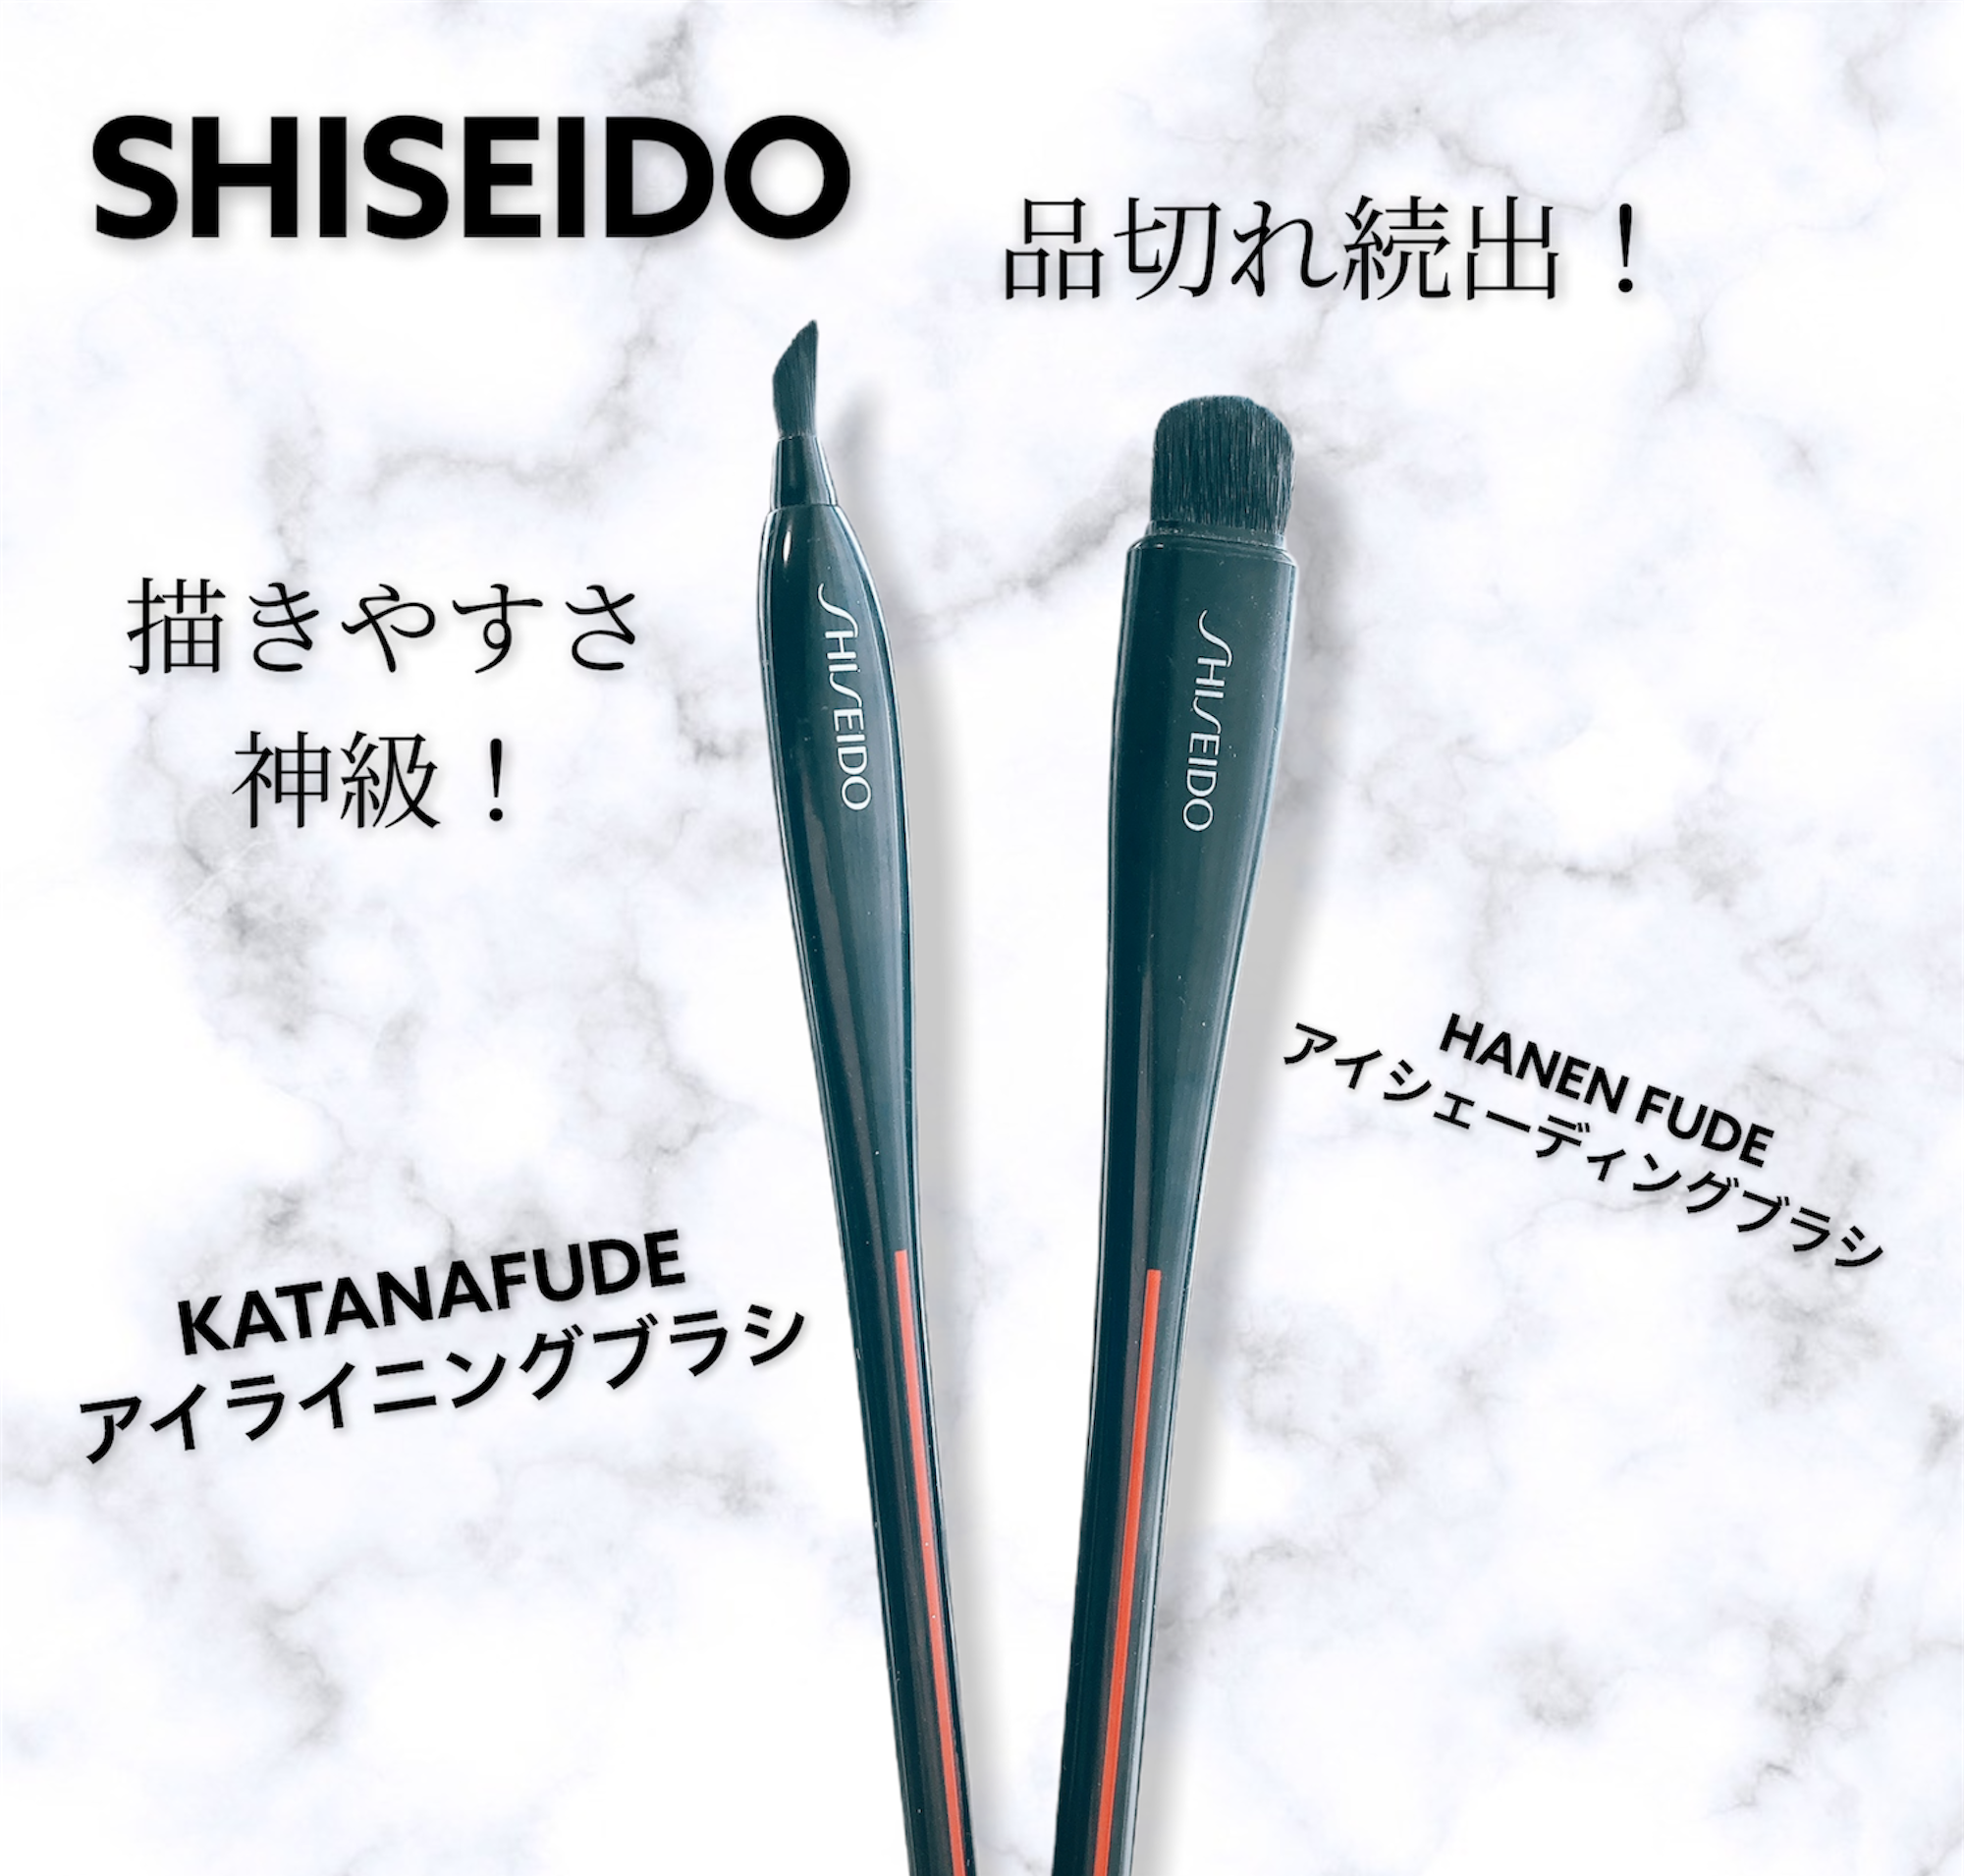 ブランド激安セール会場 SHISEIDO 資生堂 ＳＨＩＳＥＩＤＯ KATANA FUDE アイ ライニング ブラシ 